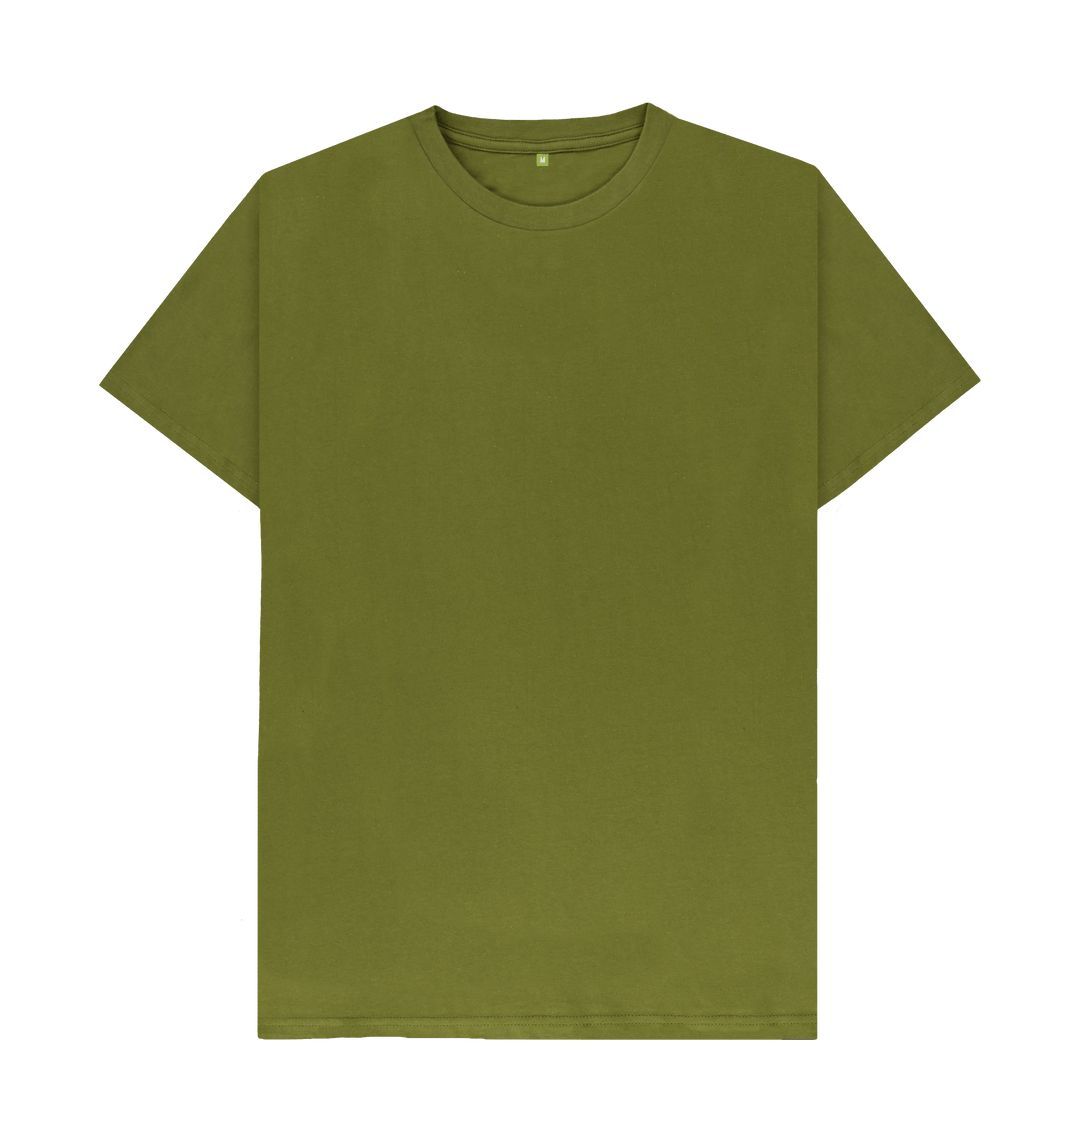 Moss Green Men's organic cotton t-shirt